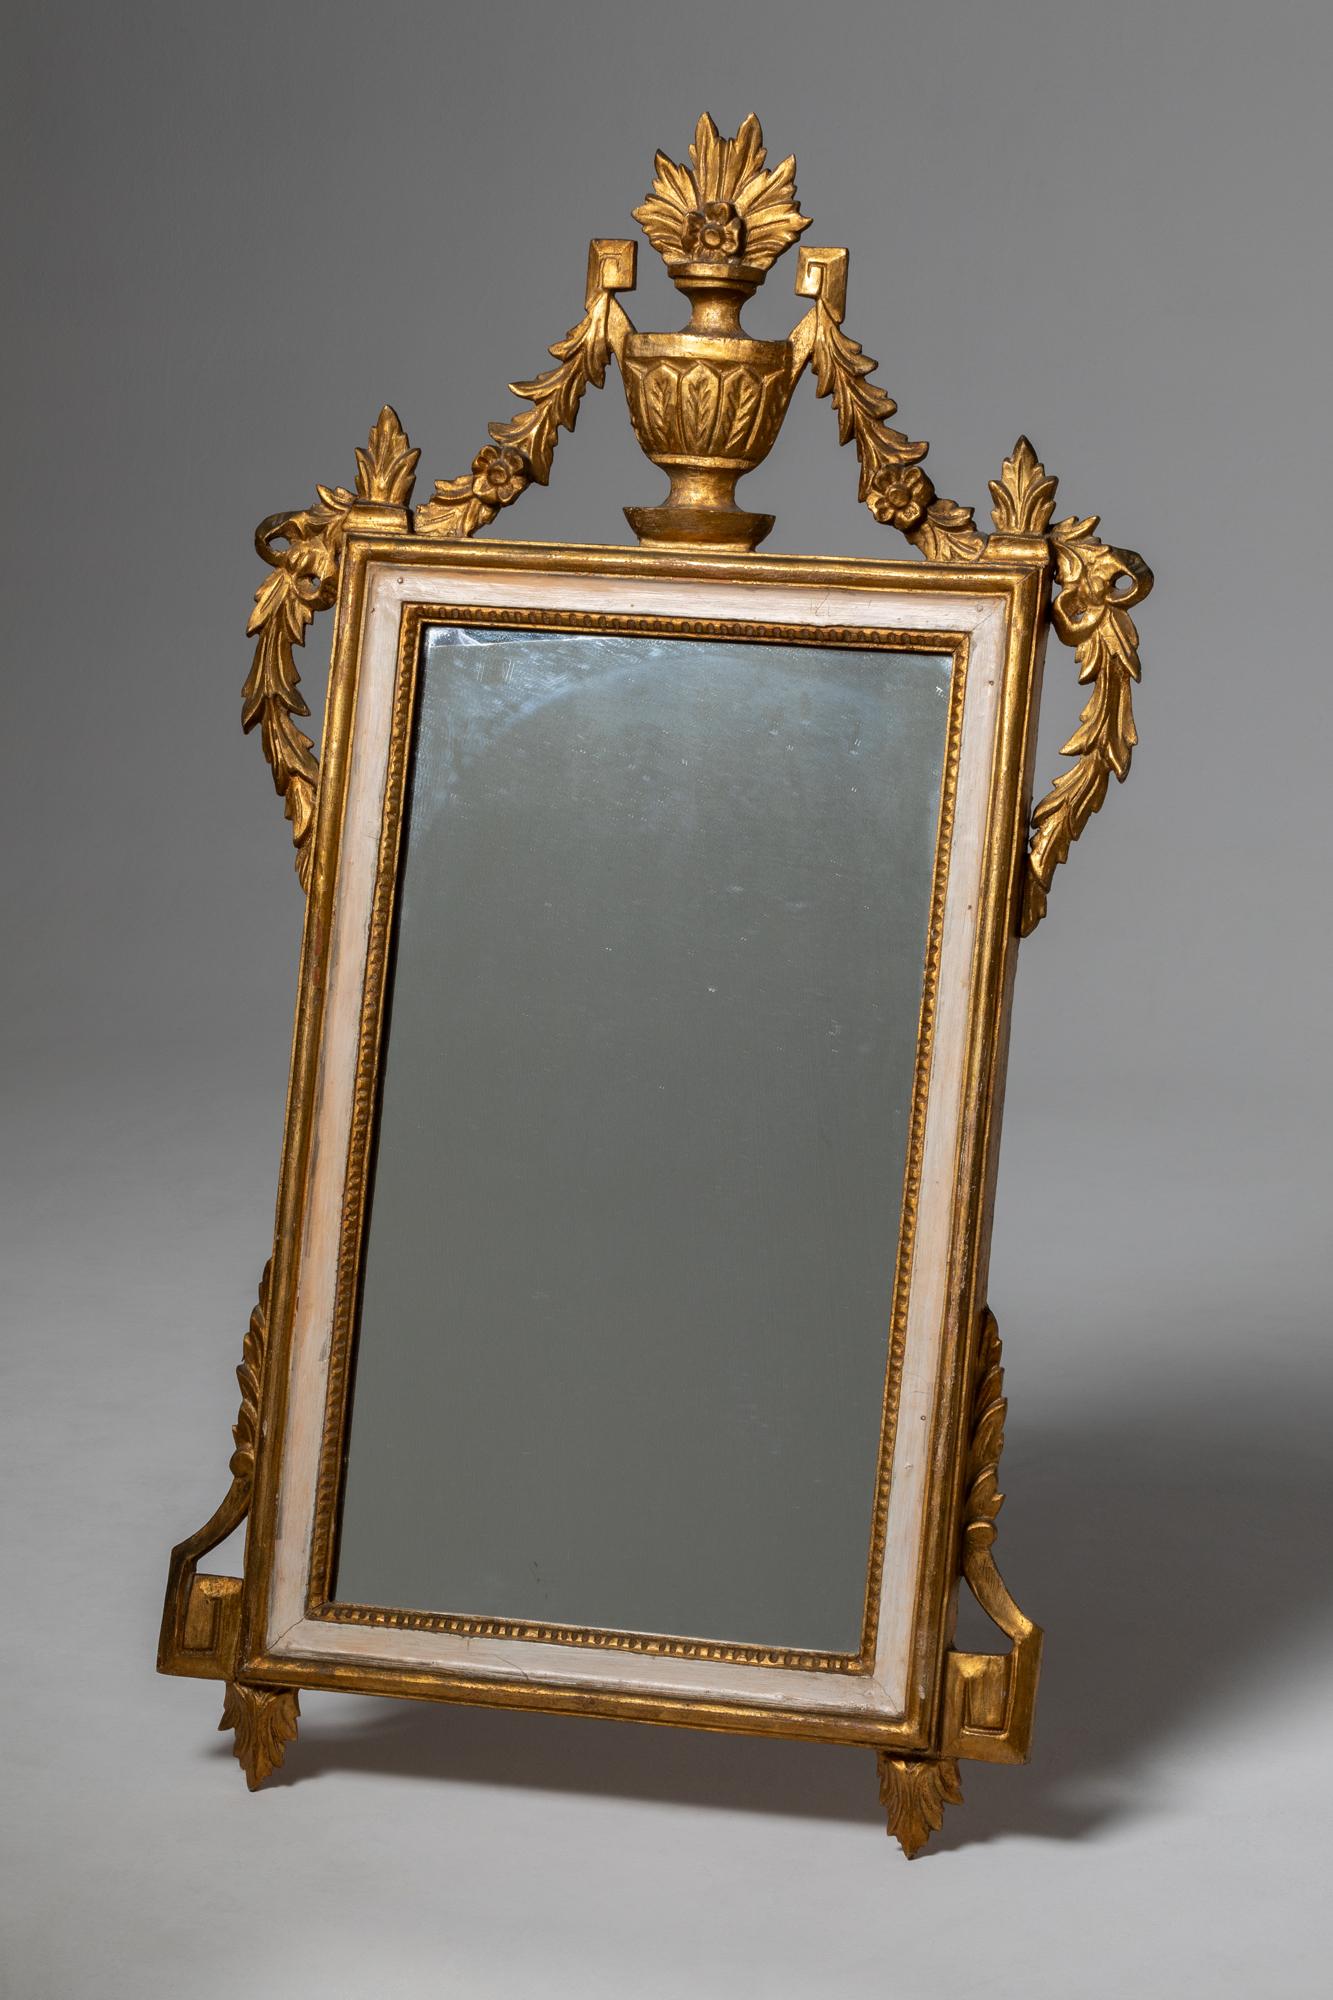 Ein schönes Beispiel für die Spiegel aus der Zeit von Ludwig XVI.

Der Louis-XVI-Stil bezeichnet eine Design- und Kunstrichtung, die im späten 18. Jahrhundert in Frankreich entstand, insbesondere während der Herrschaft von König Louis XVI